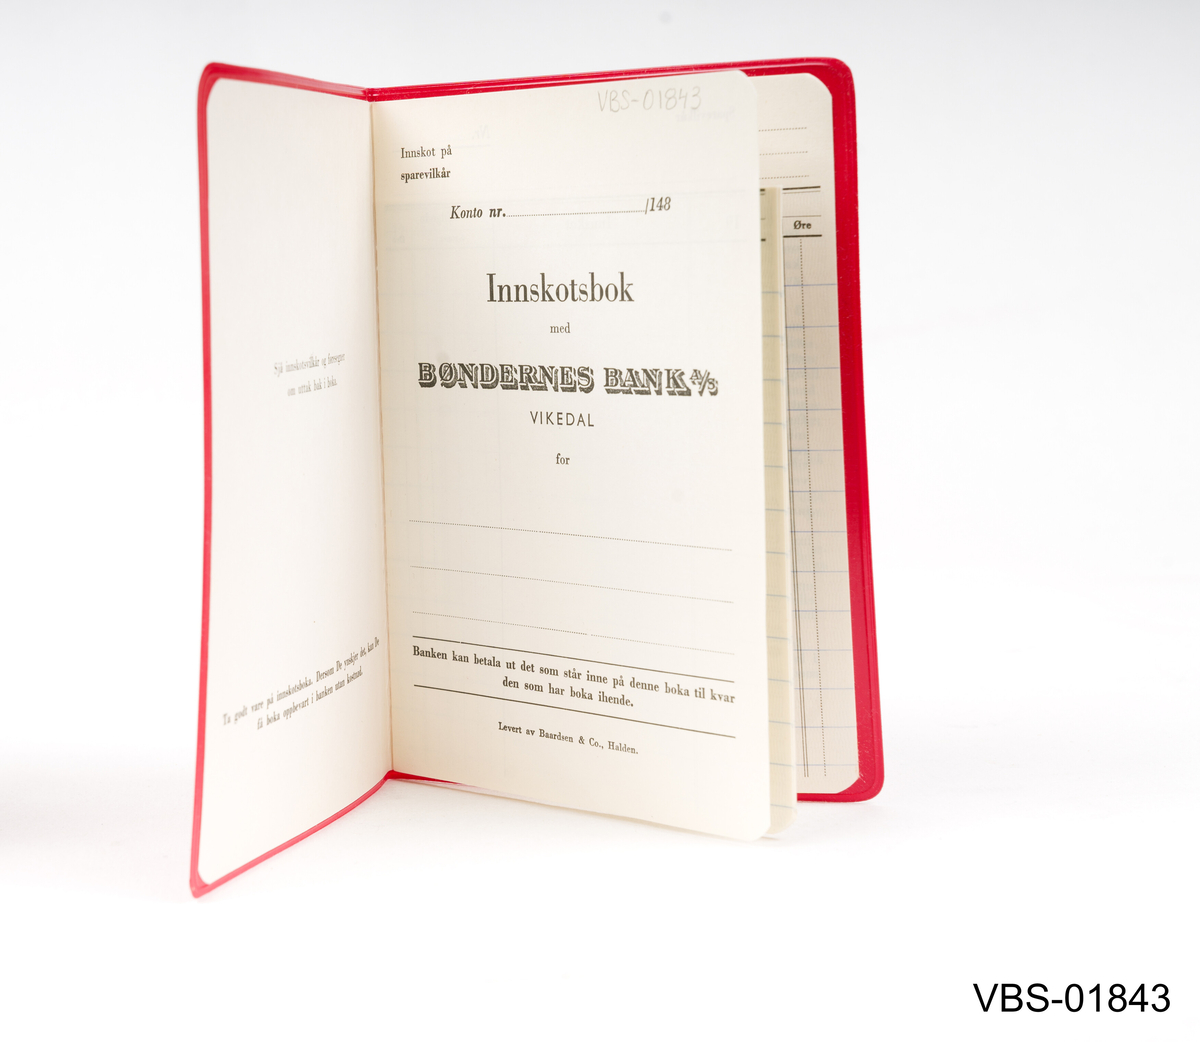 Ubrukt bankbok/innskudsbok fra Bøndernes Bank A/S Vikedal.
I rødt plastfutteral med18 sider.